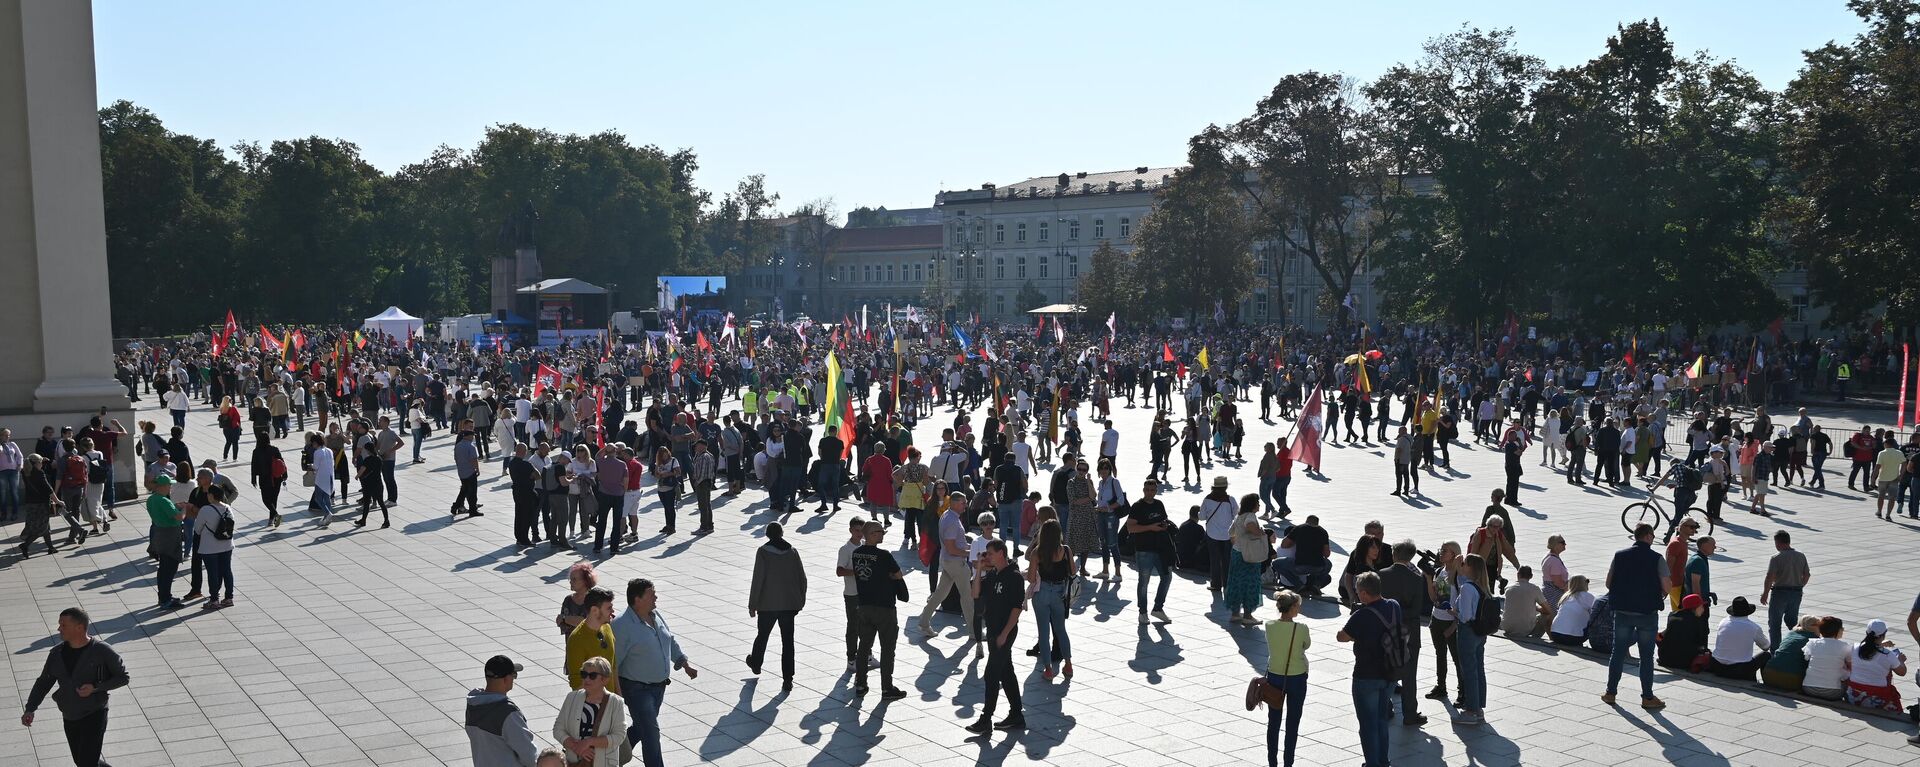 Митинг на Кафедральной площади в Вильнюсе - Sputnik Литва, 1920, 10.09.2021